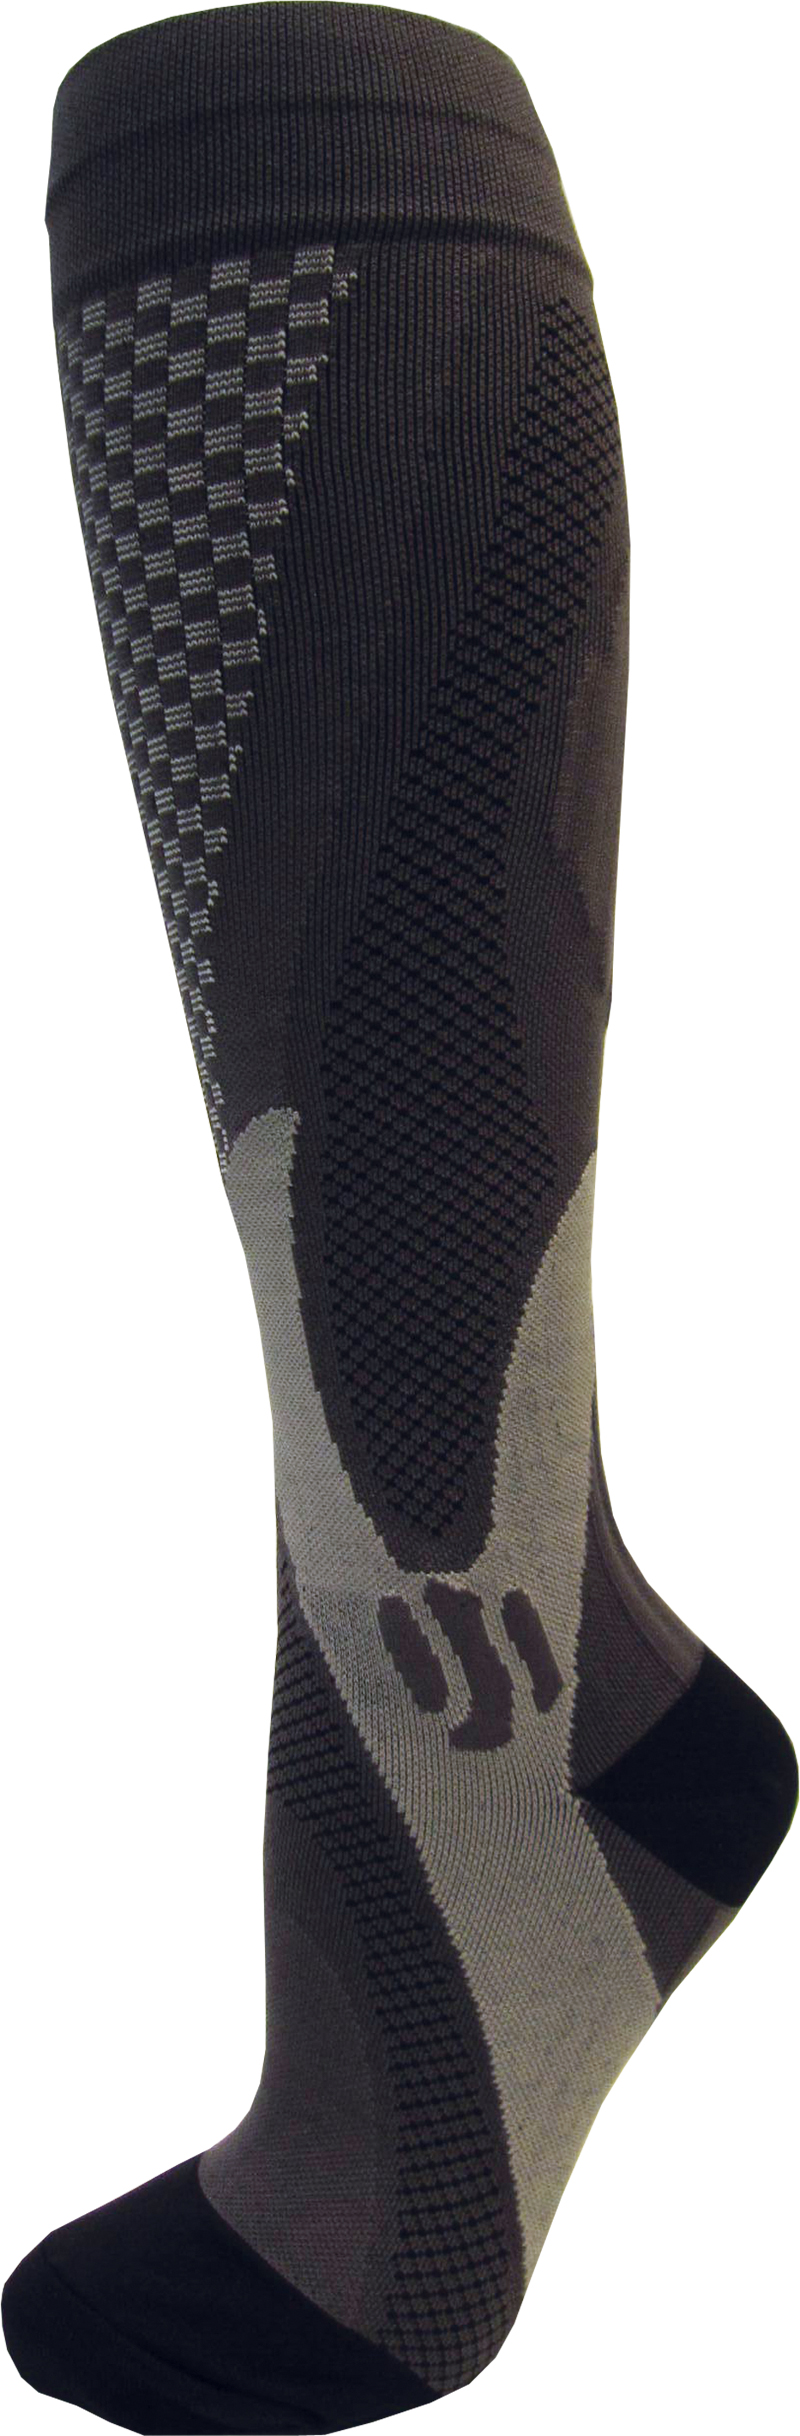 Kompresní sportovní ponožky CHECKER, černé, vel.35-38